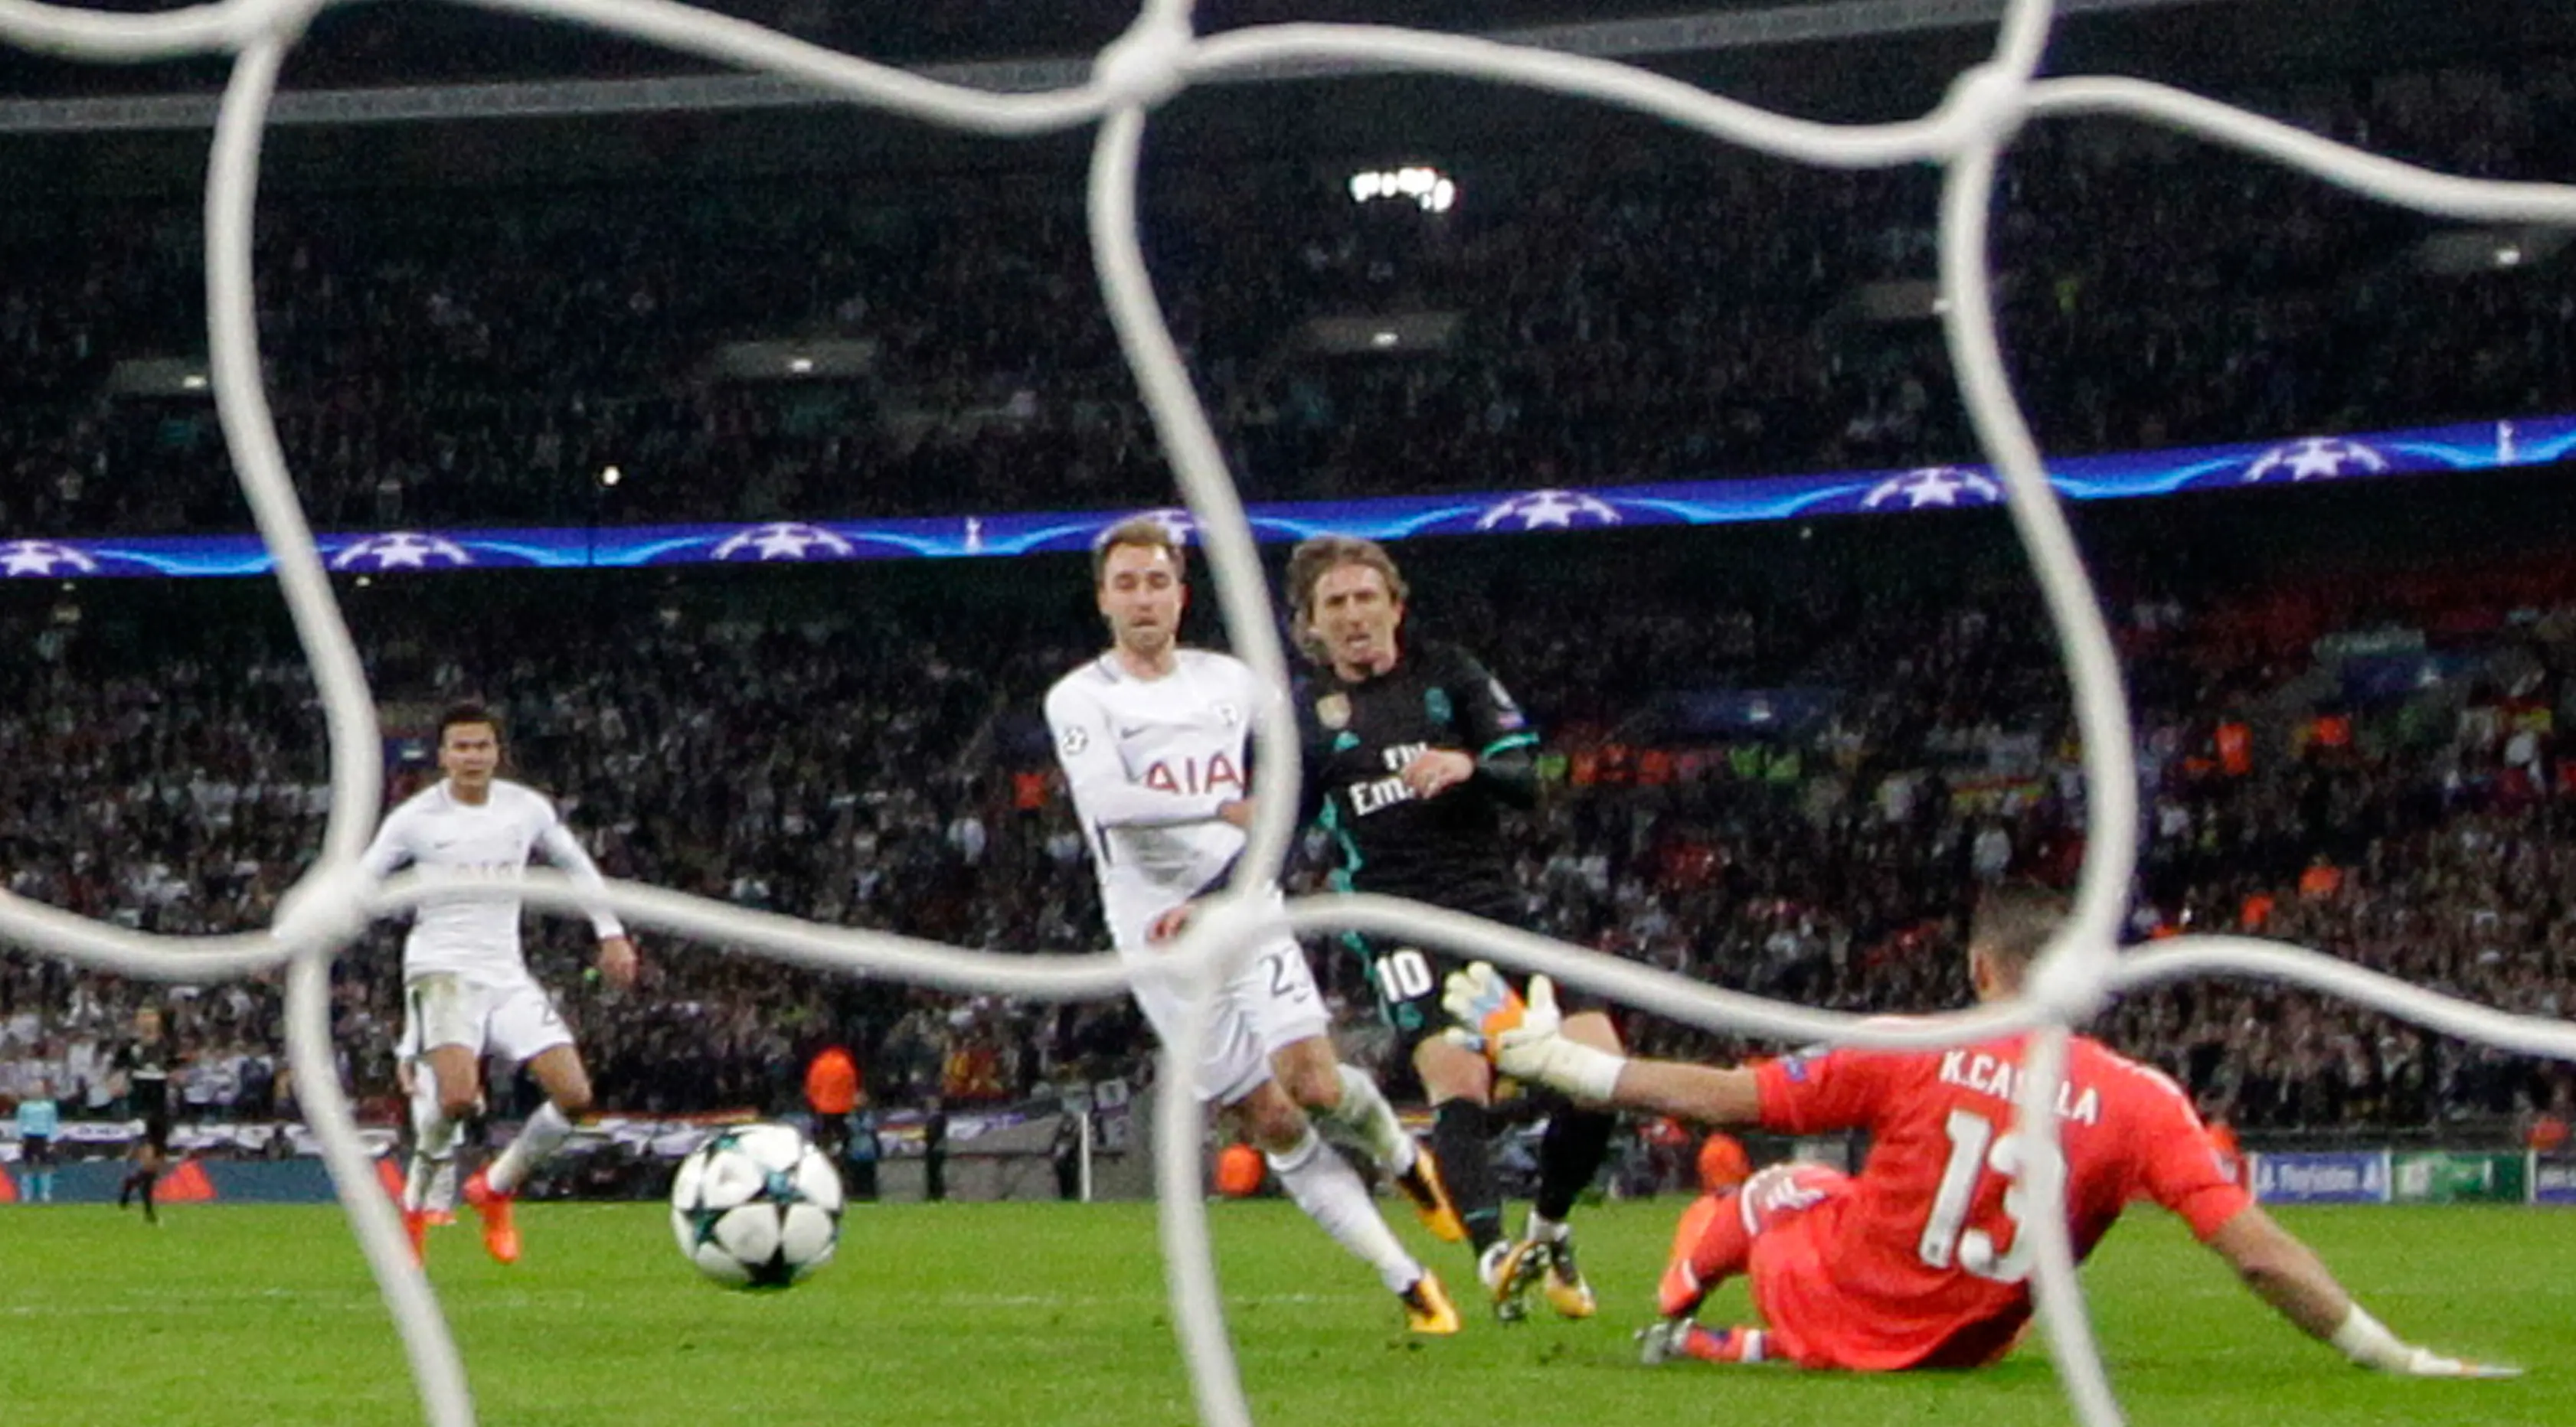 Pemain Tottenham Hotspur, Christian Eriksen mencetak gol ke gawang Real Madrid pada pertandingan Grup H Liga Champions di Stadion Wembley, Rabu (1/11/2017). (AP/Matt Dunham)